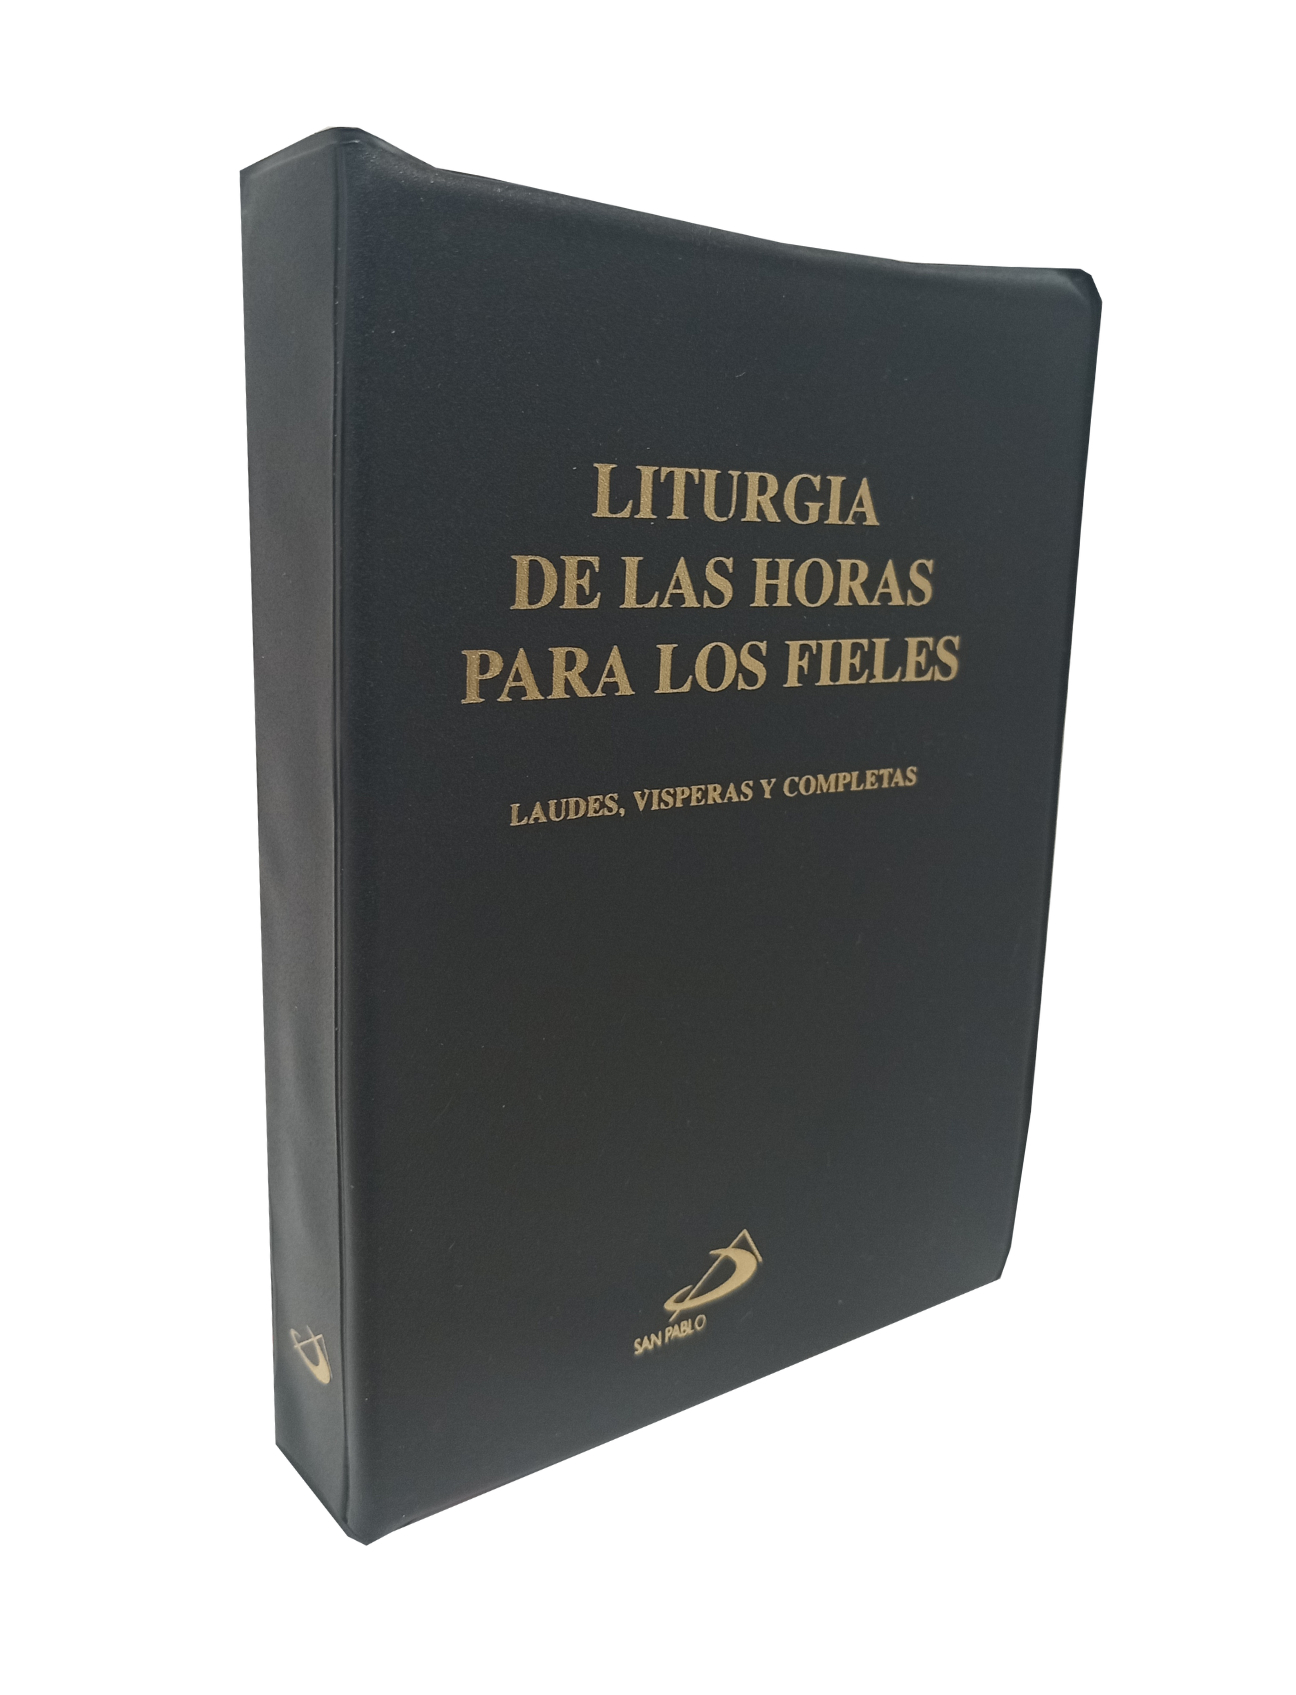 LITURGIA DE LAS HORAS PARA LOS FIELES